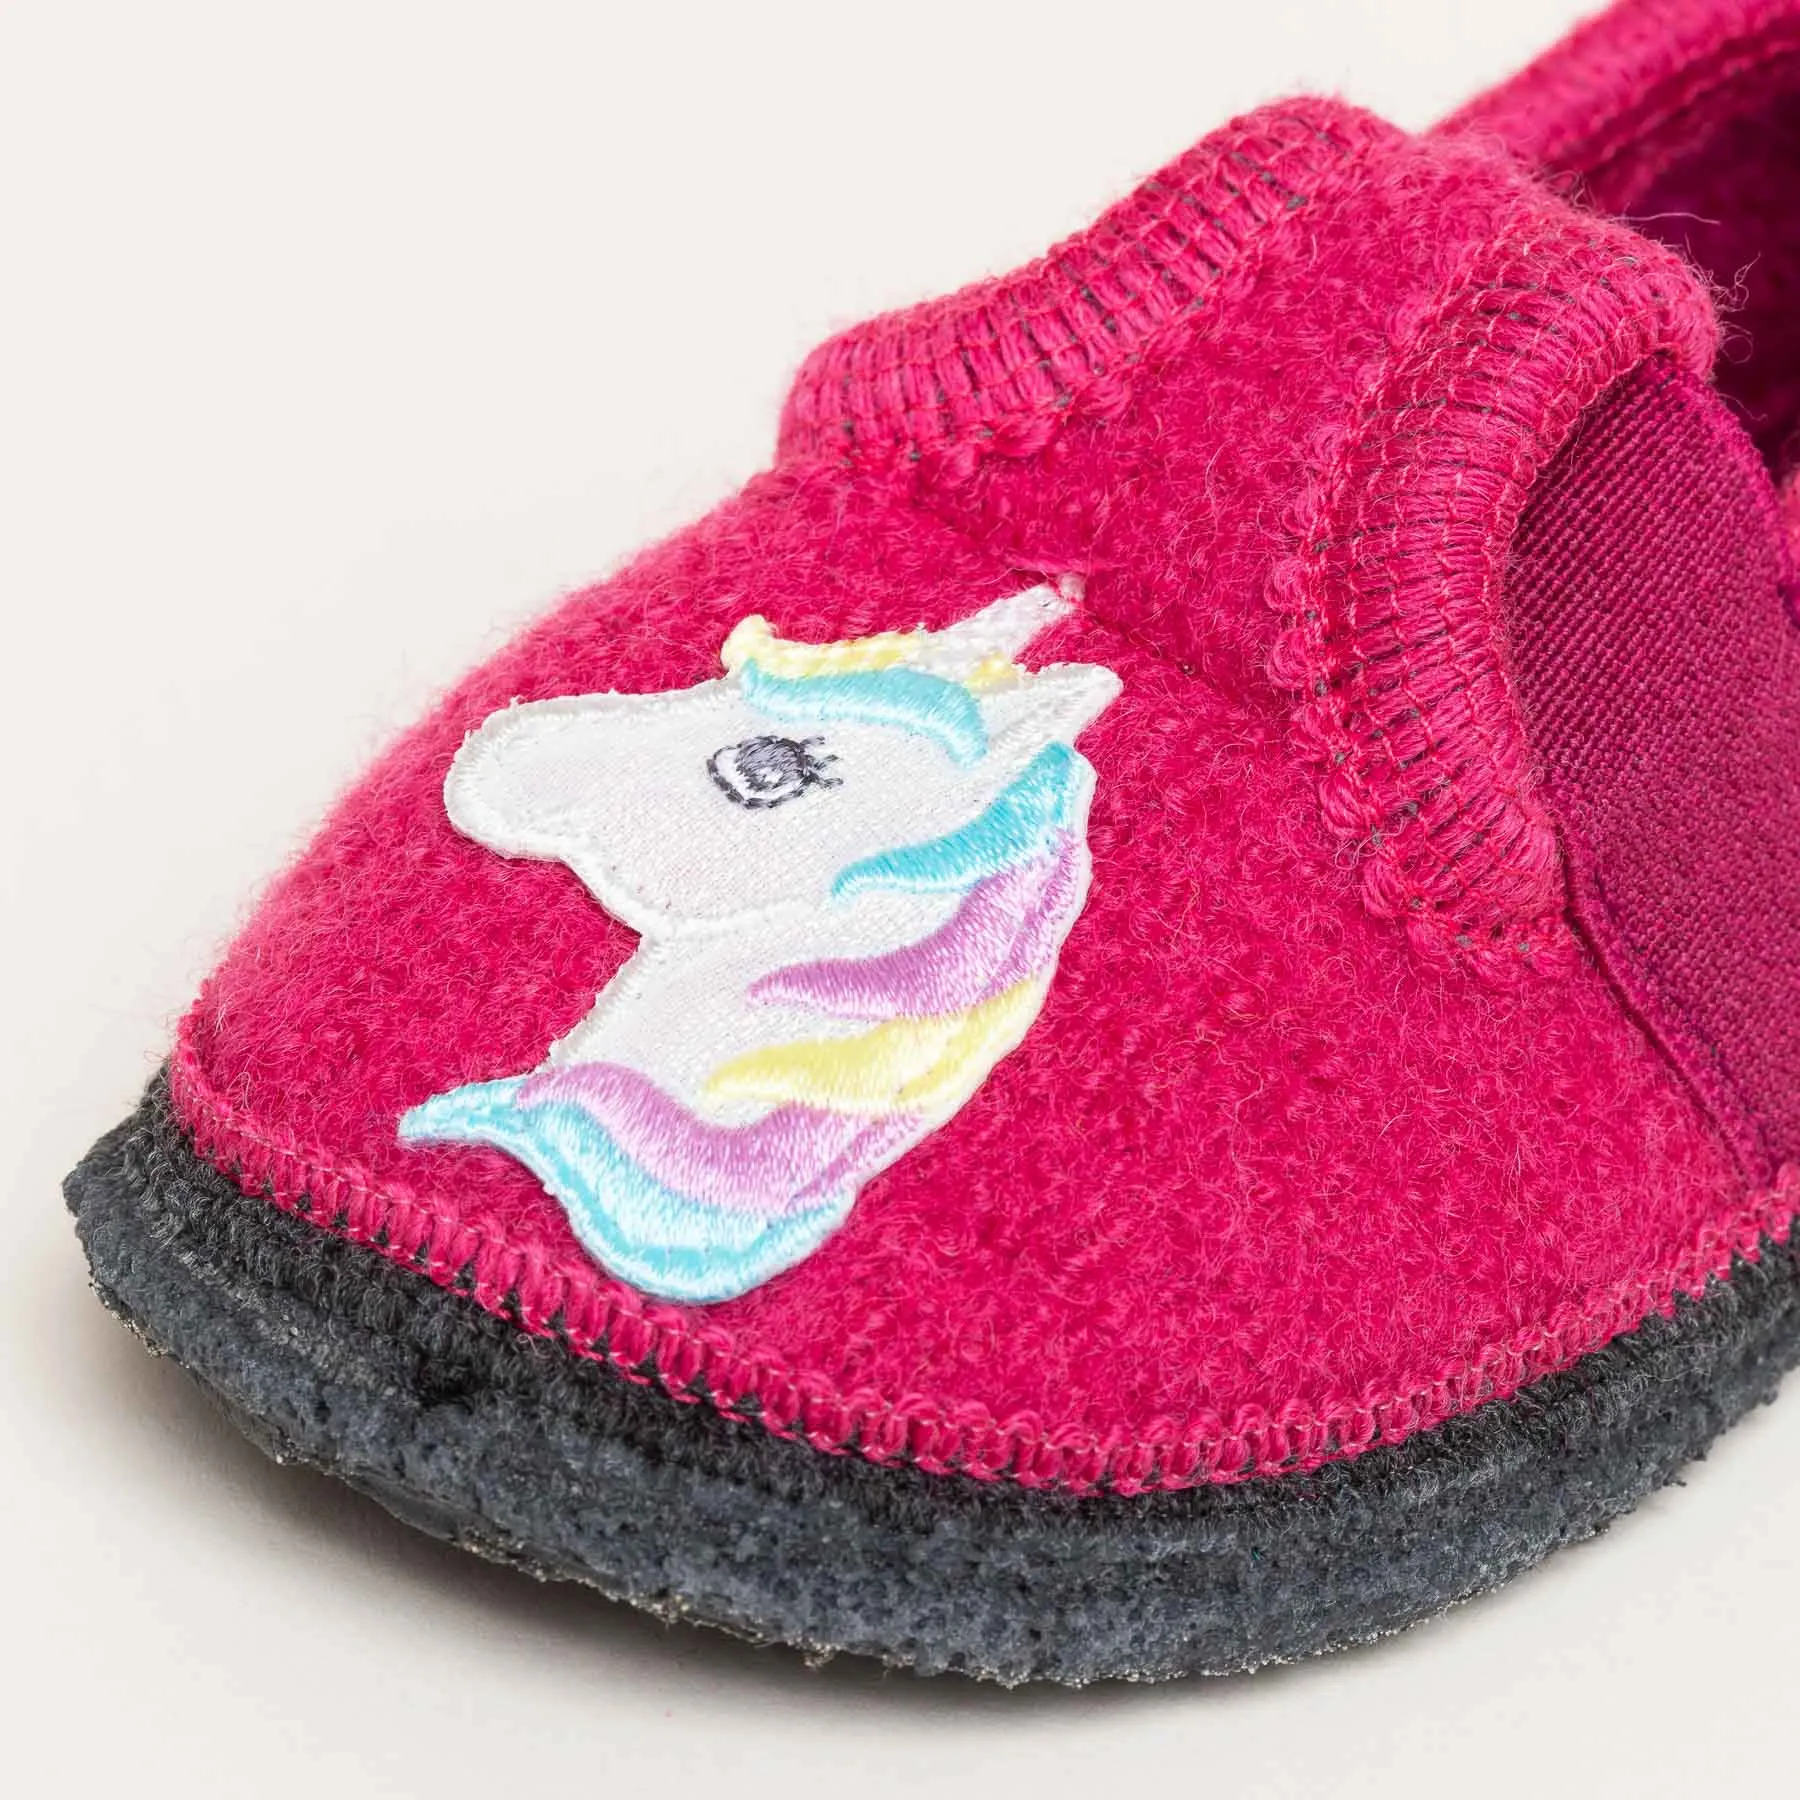 Bobby Unicorn Children's slipper